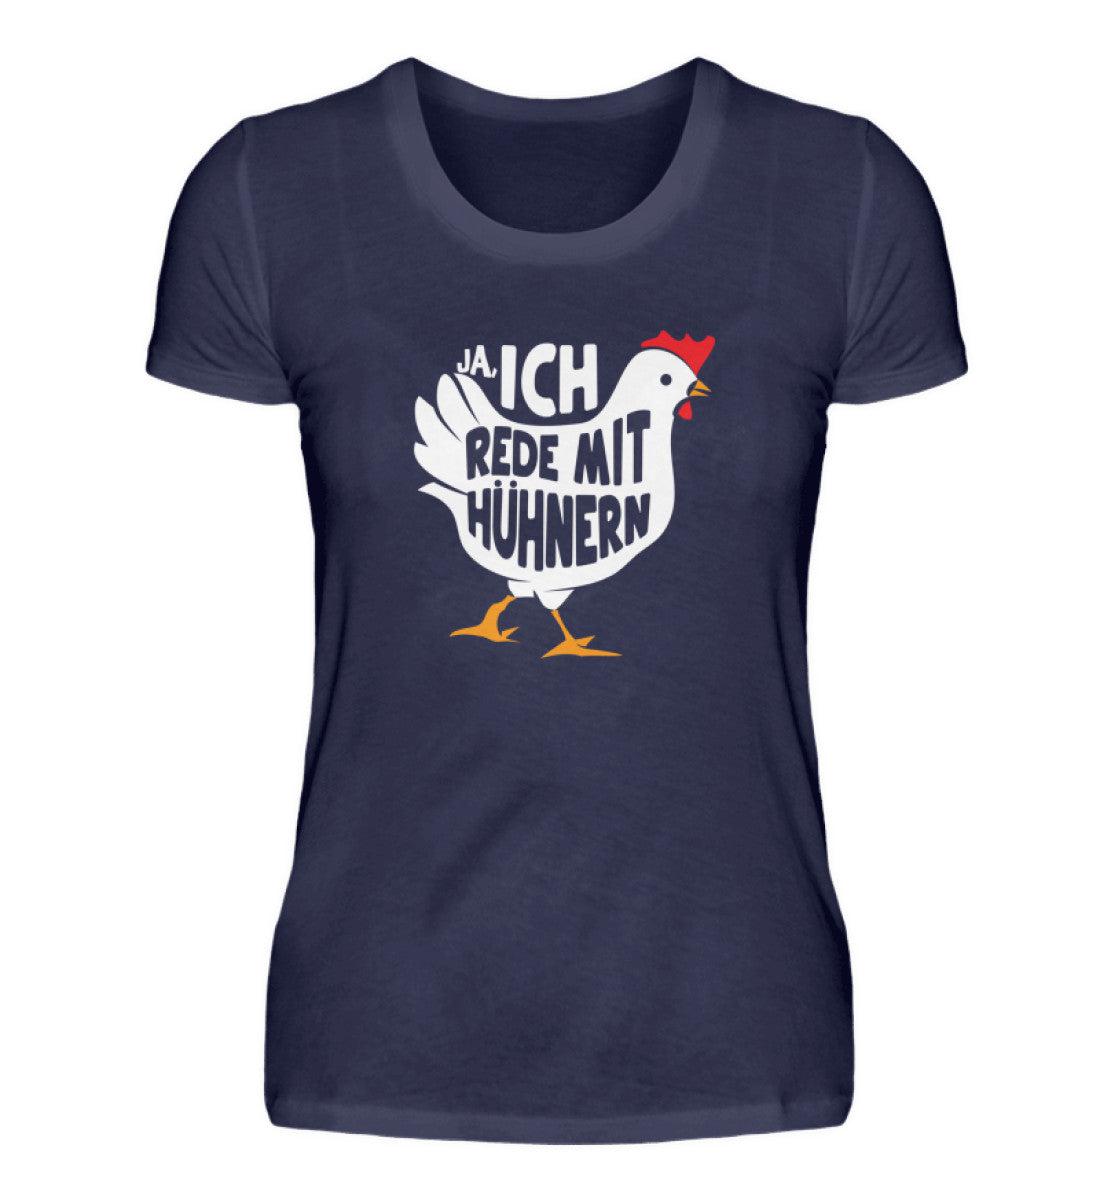 Ja, ich rede mit Hühnern · Damen T-Shirt-Damen Basic T-Shirt-Navy-S-Agrarstarz